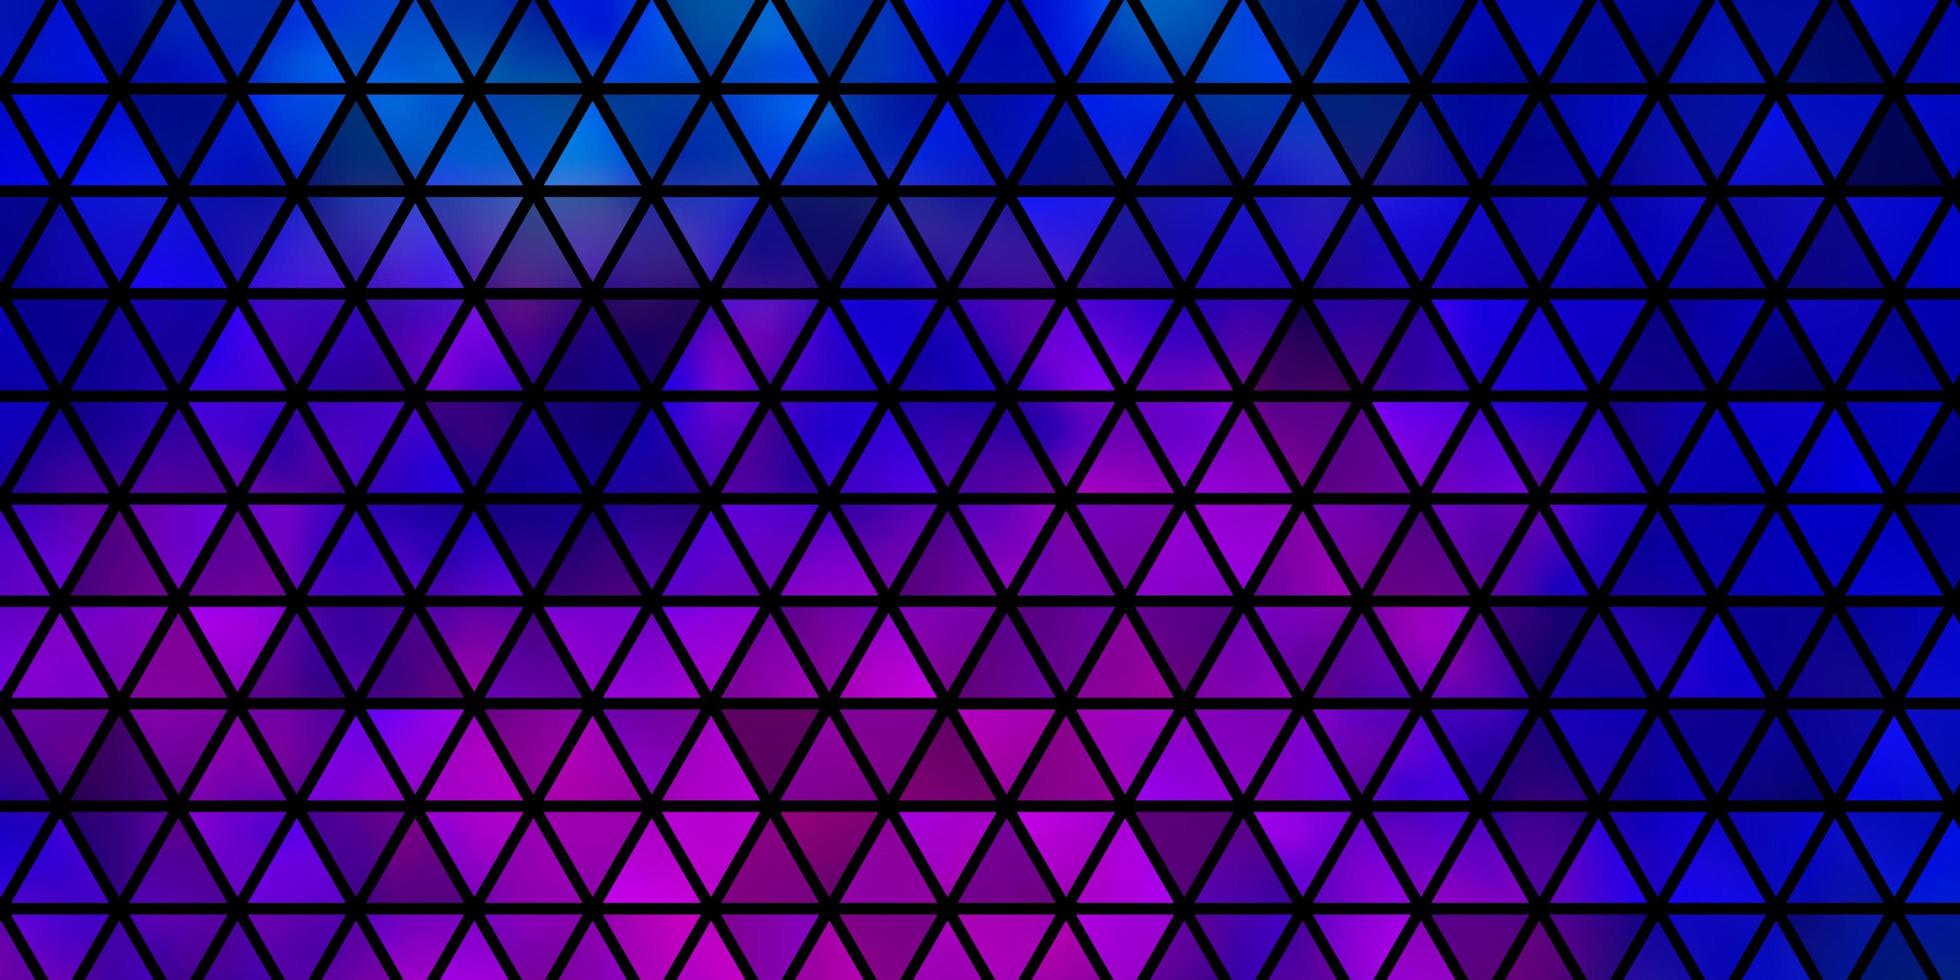 donkerroze, blauwe vector sjabloon met kristallen, driehoeken.